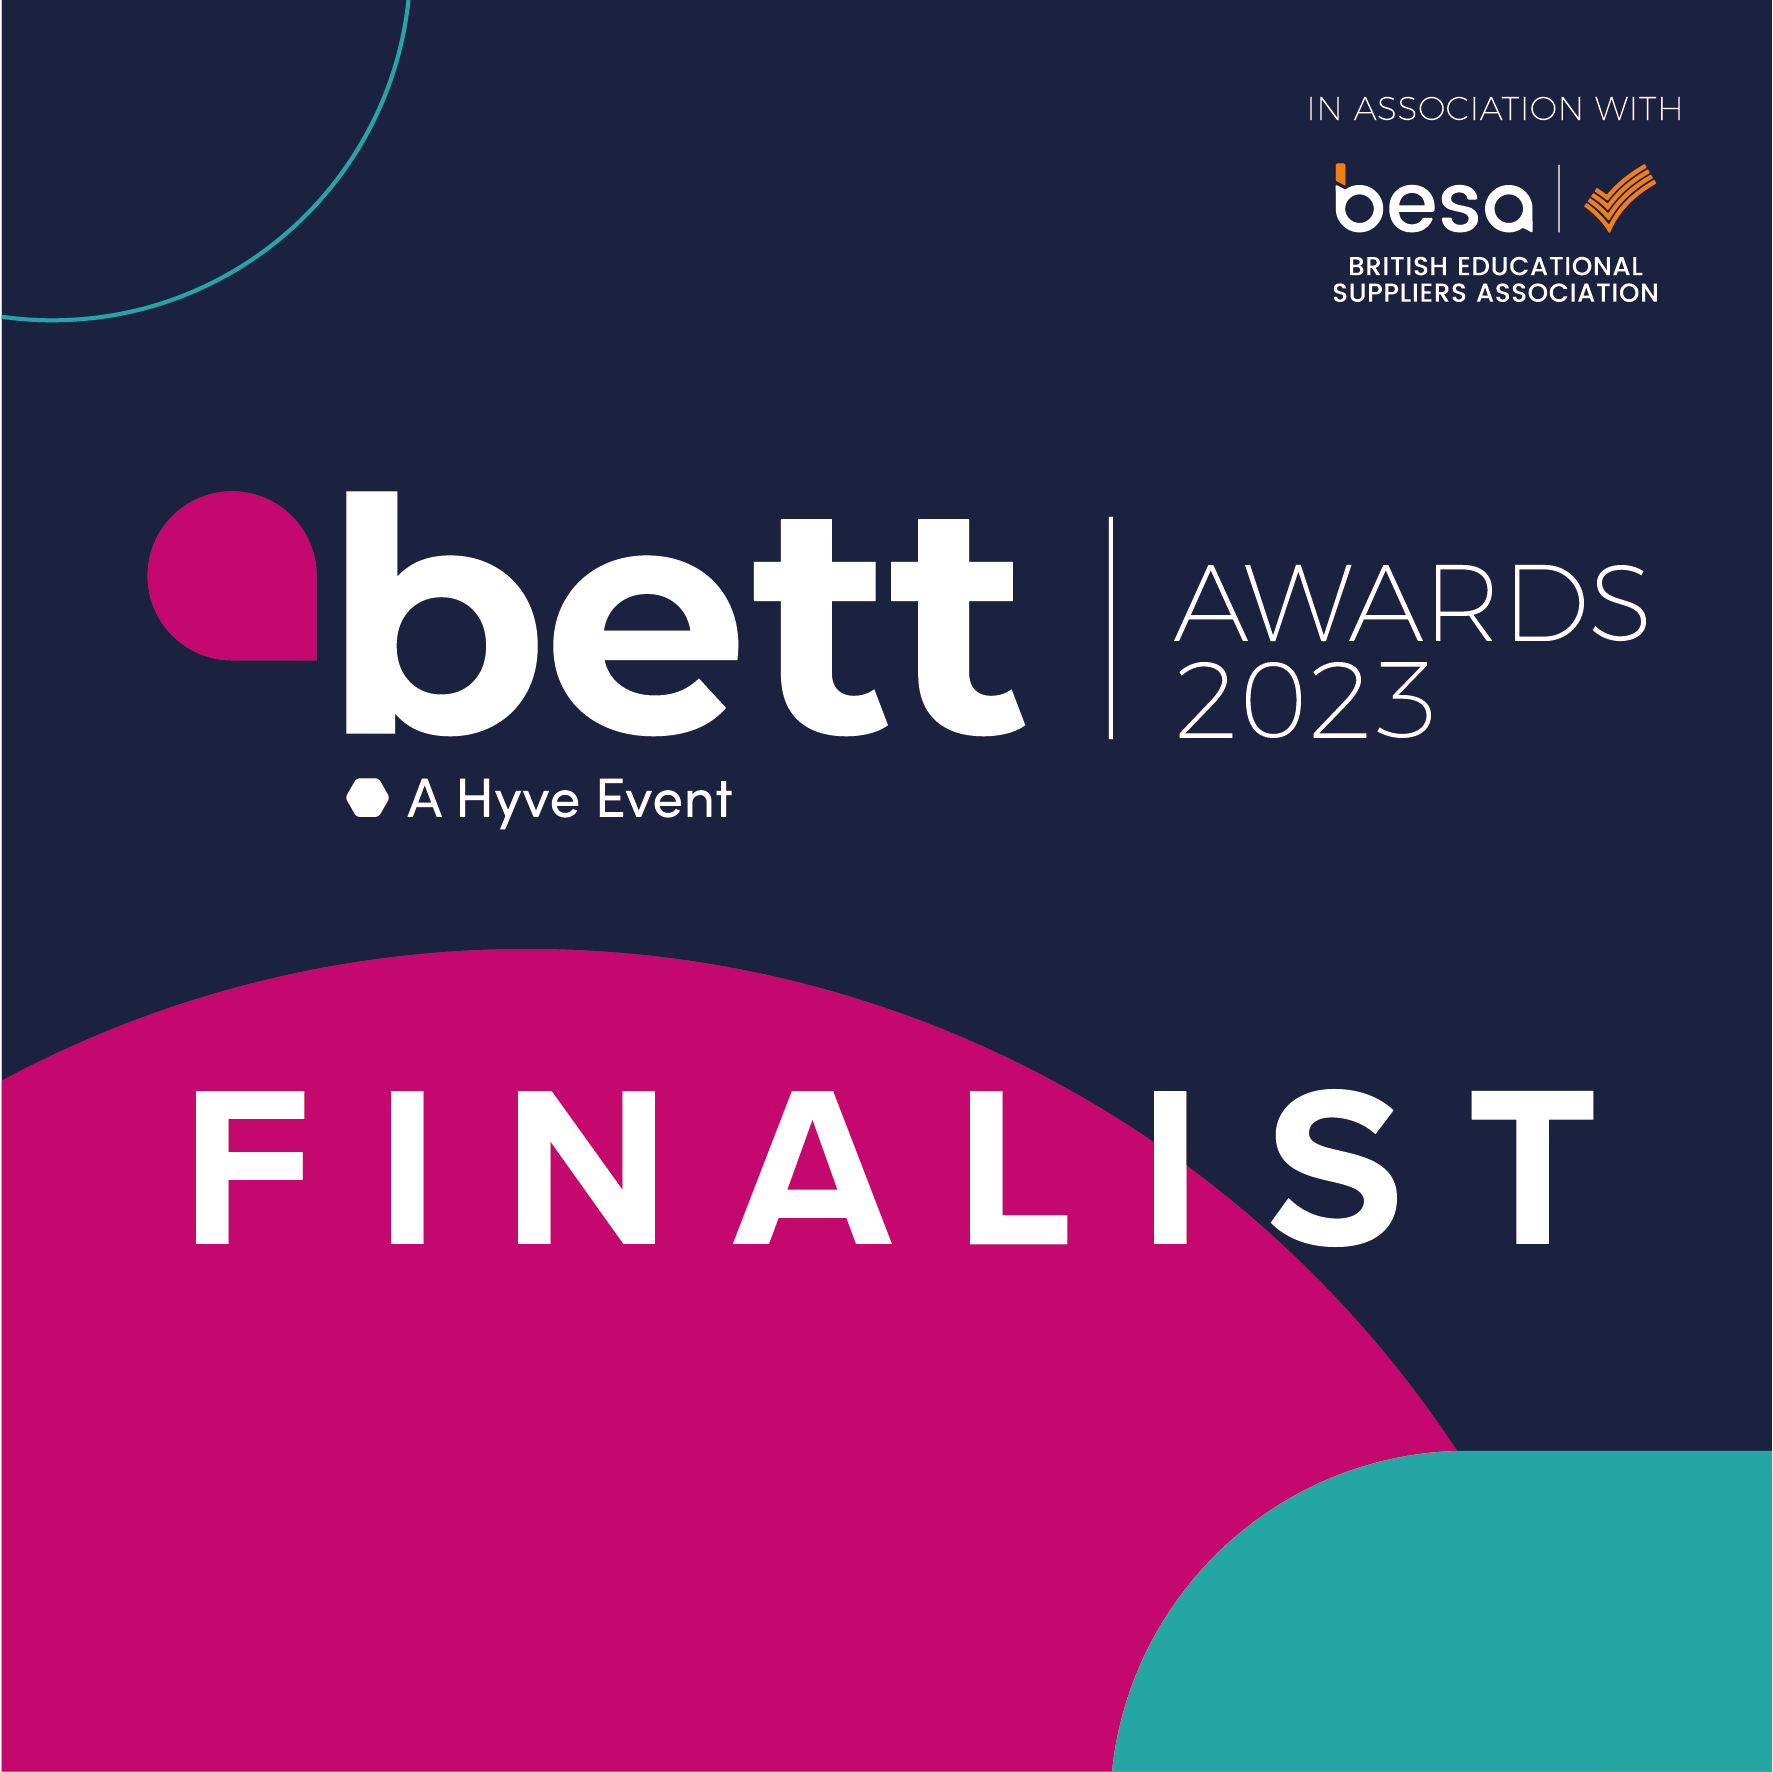 The Bett Awards Finalist 2023